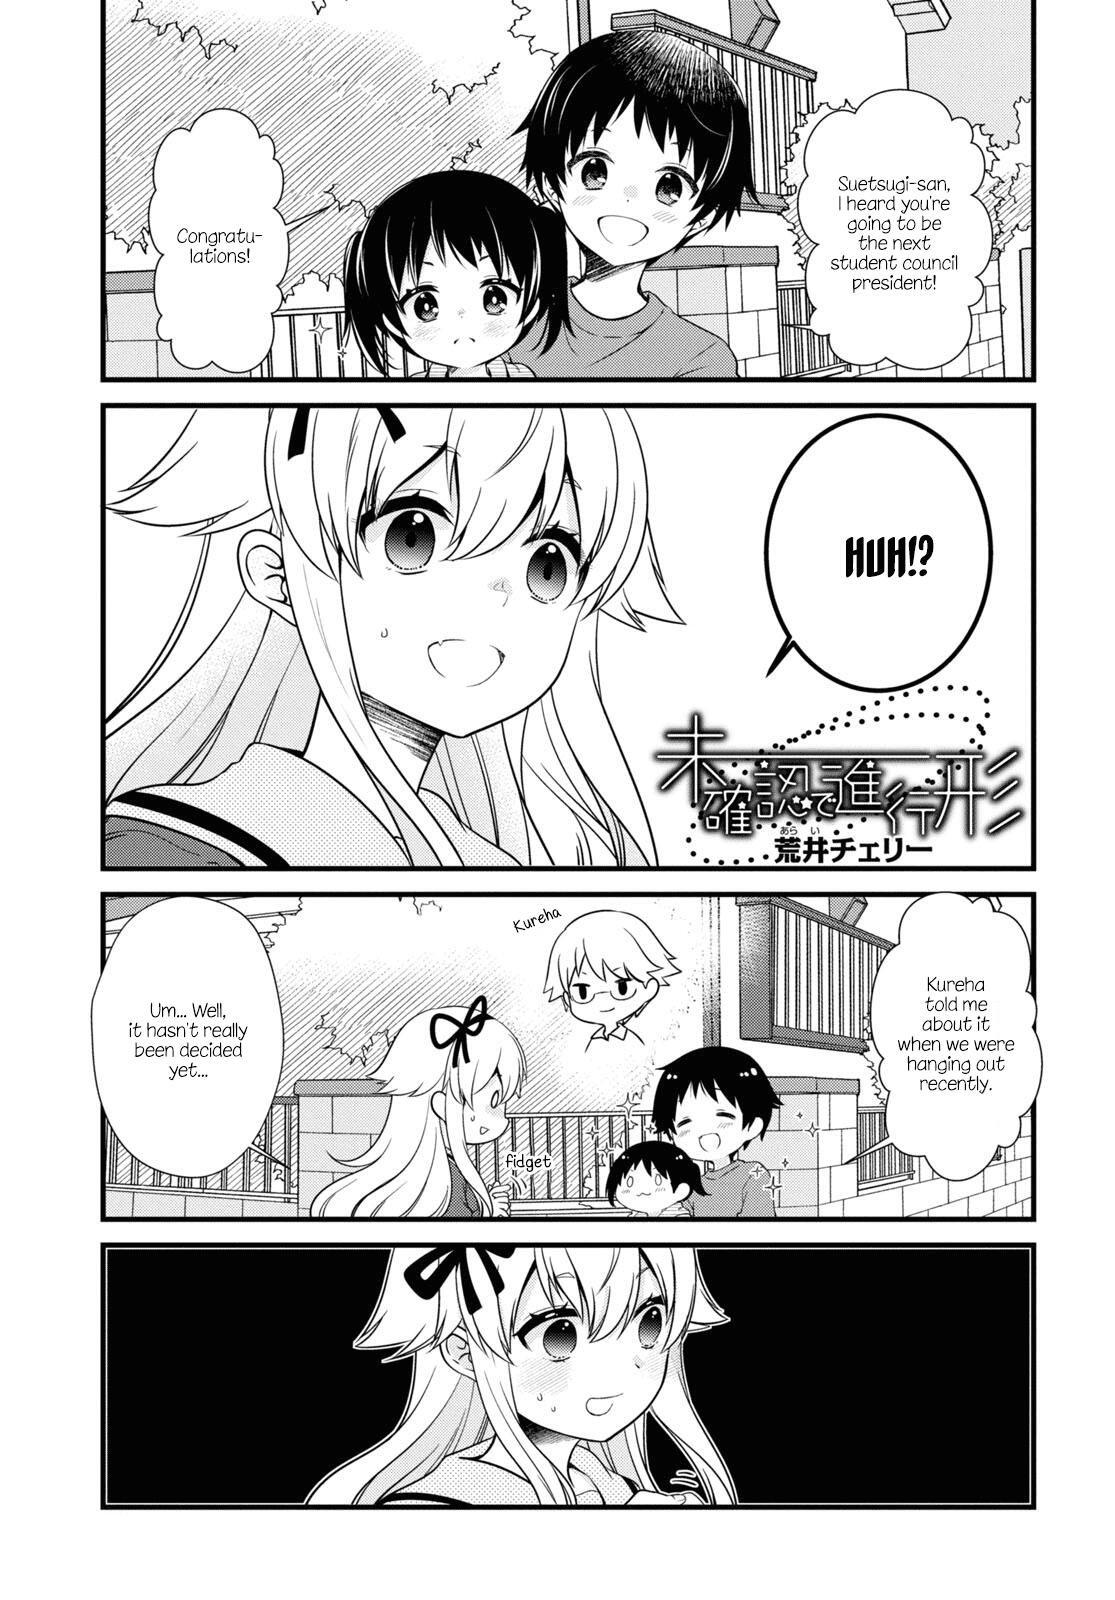 Read Mikakunin De Shinkoukei Manga on Mangakakalot